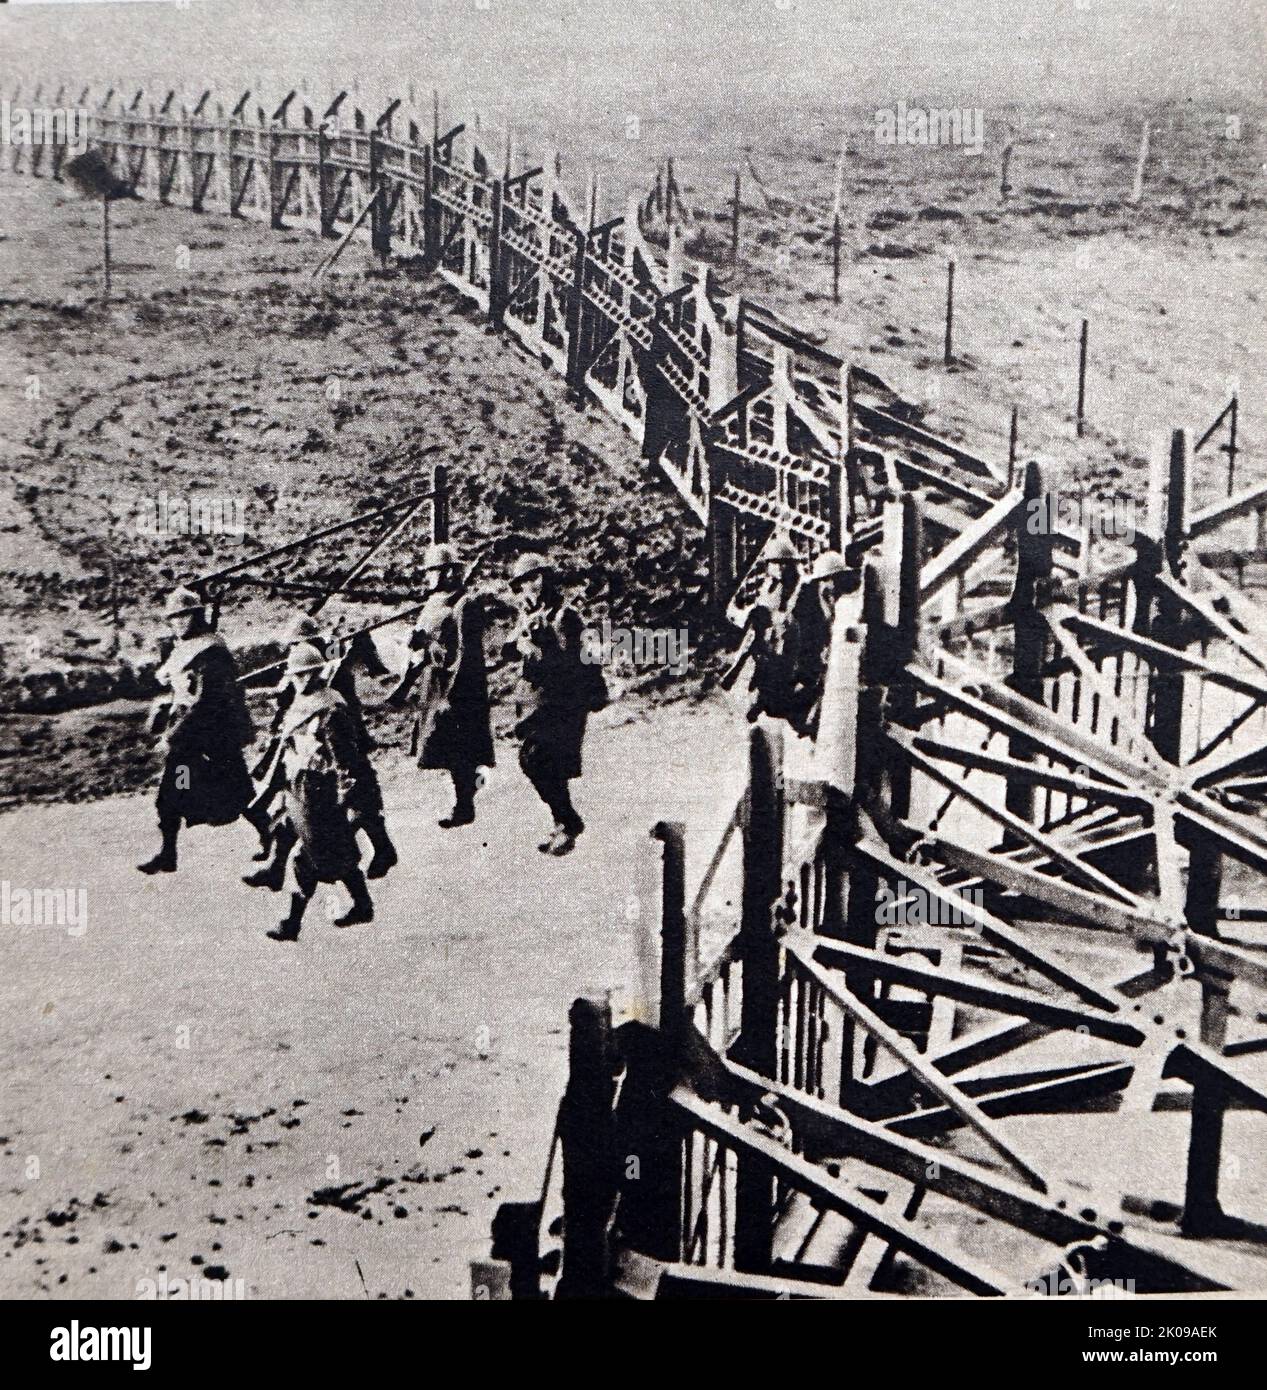 Soldati belgi che pattugliano la frontiera belgo-tedesca, che ha forti fortificazioni e barriere anticarro durante la seconda guerra mondiale Foto Stock